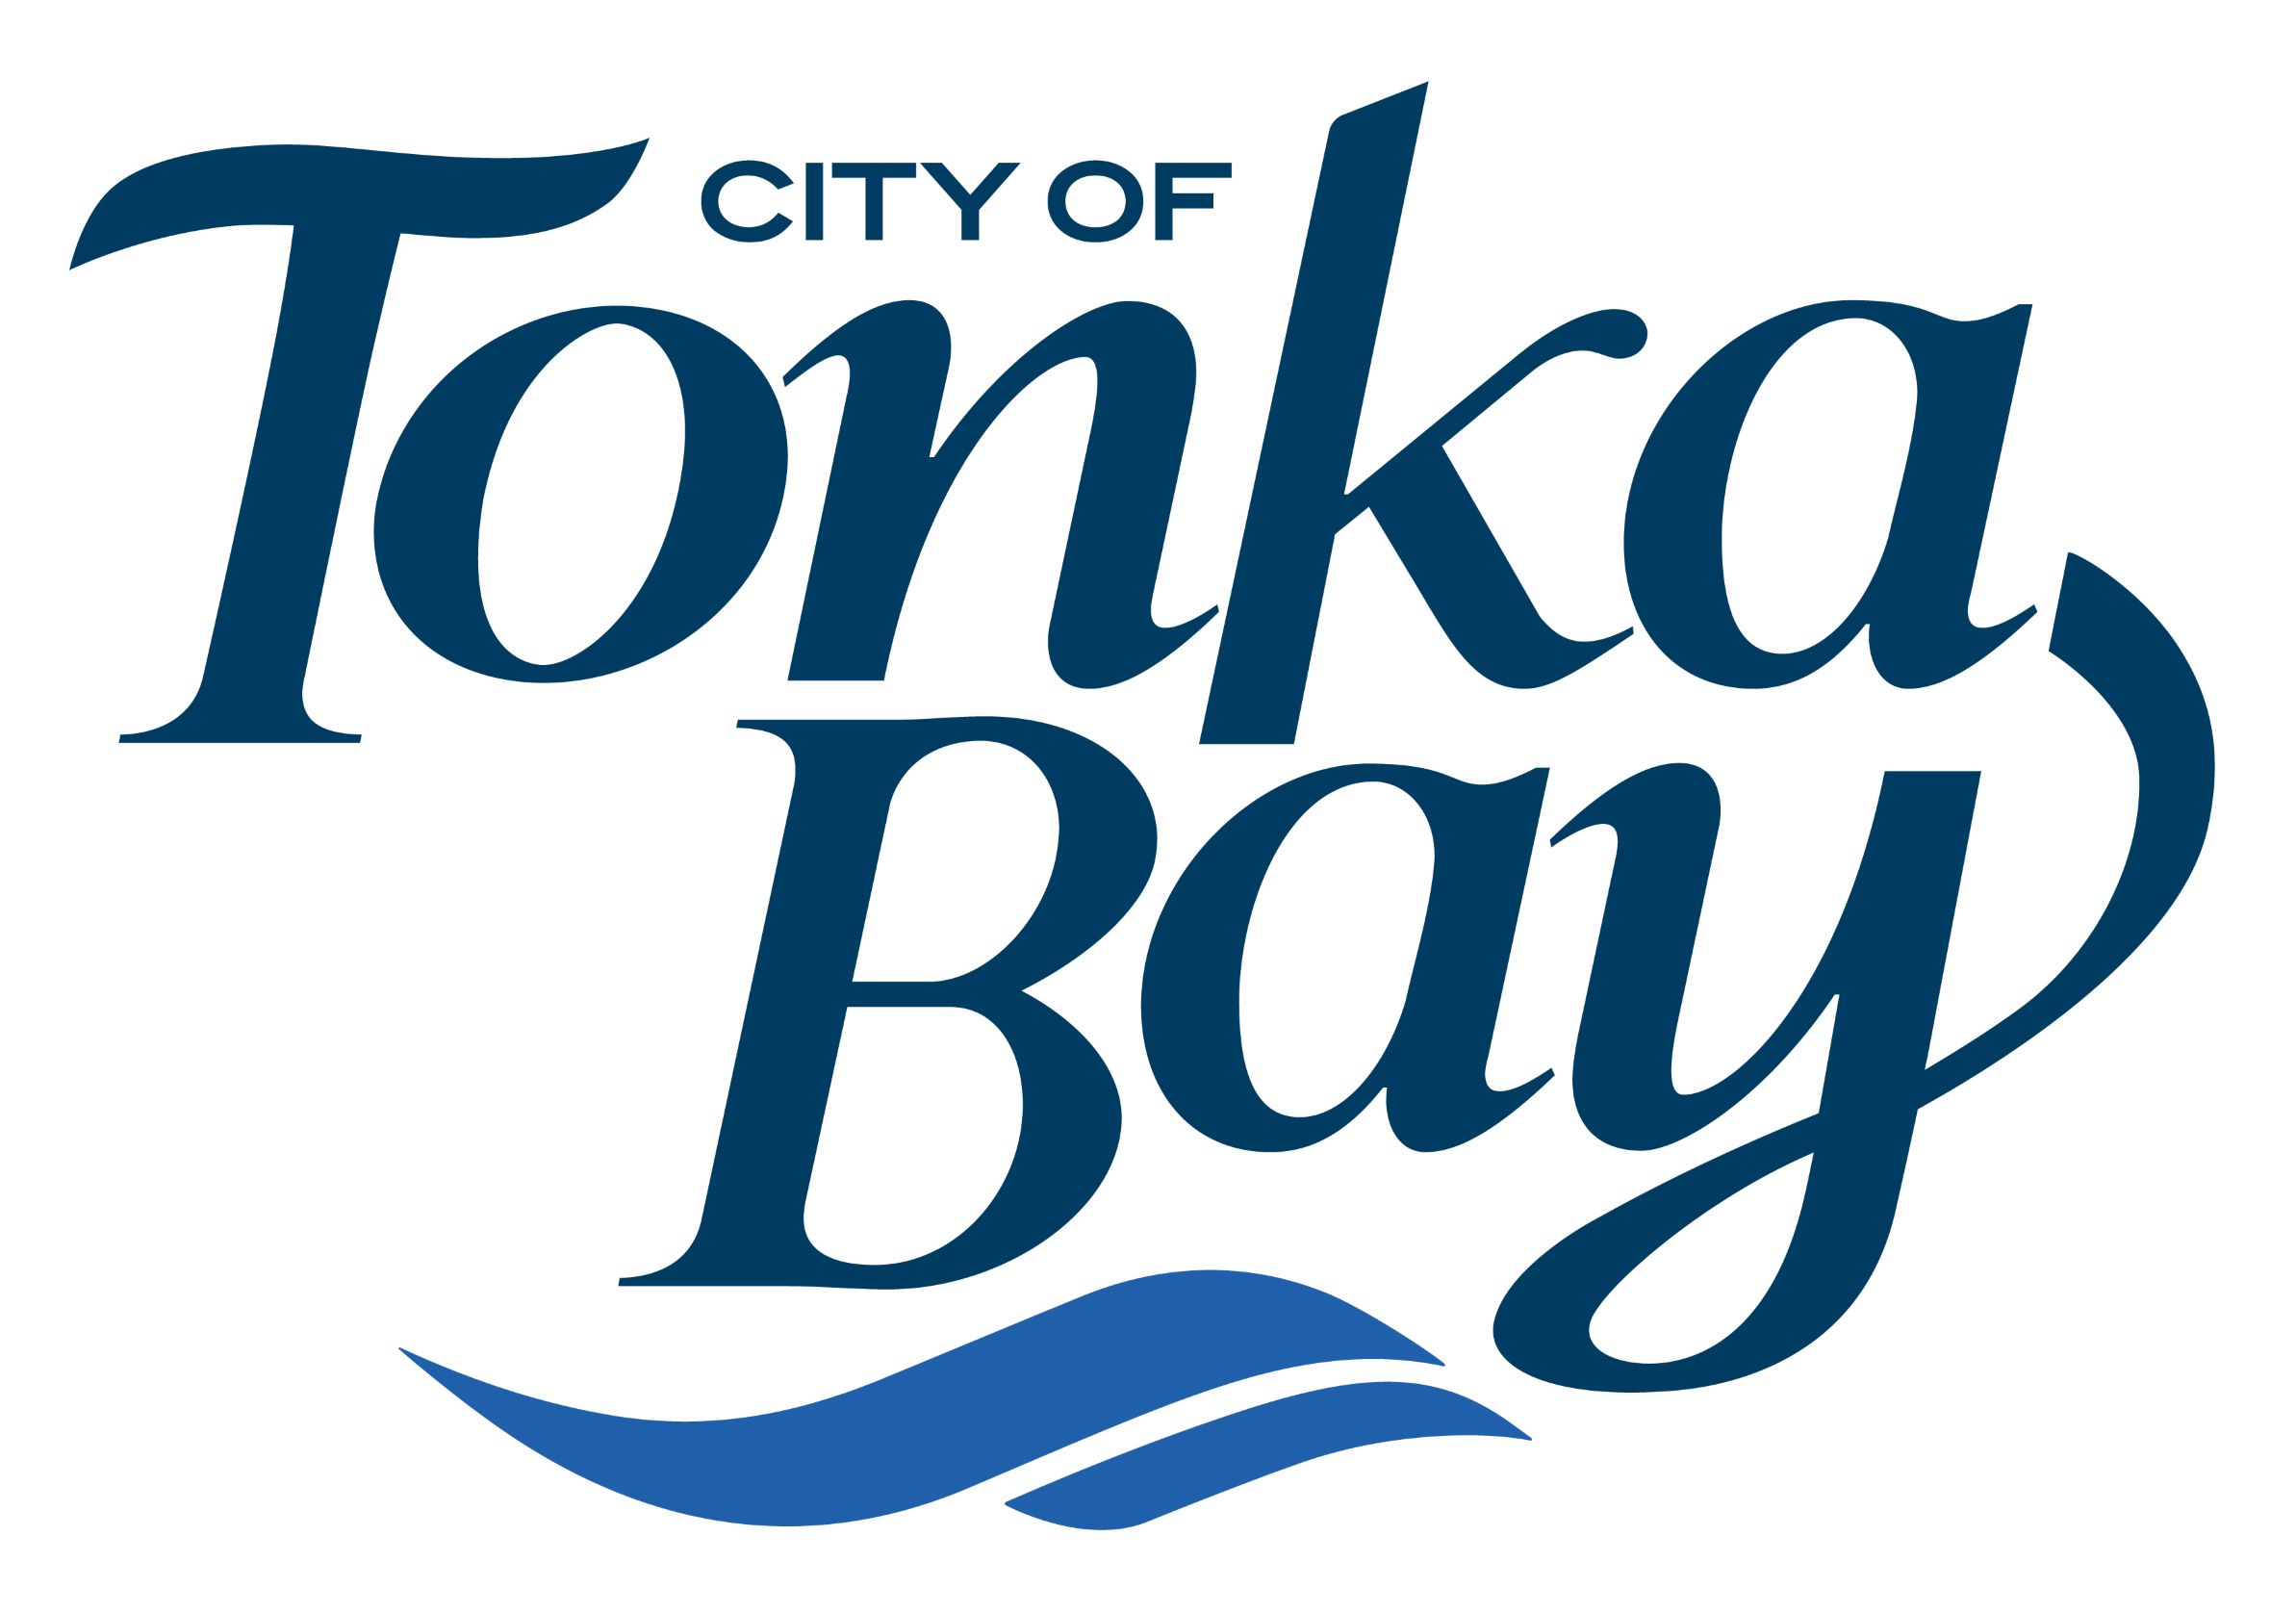 City of Tonka Bay